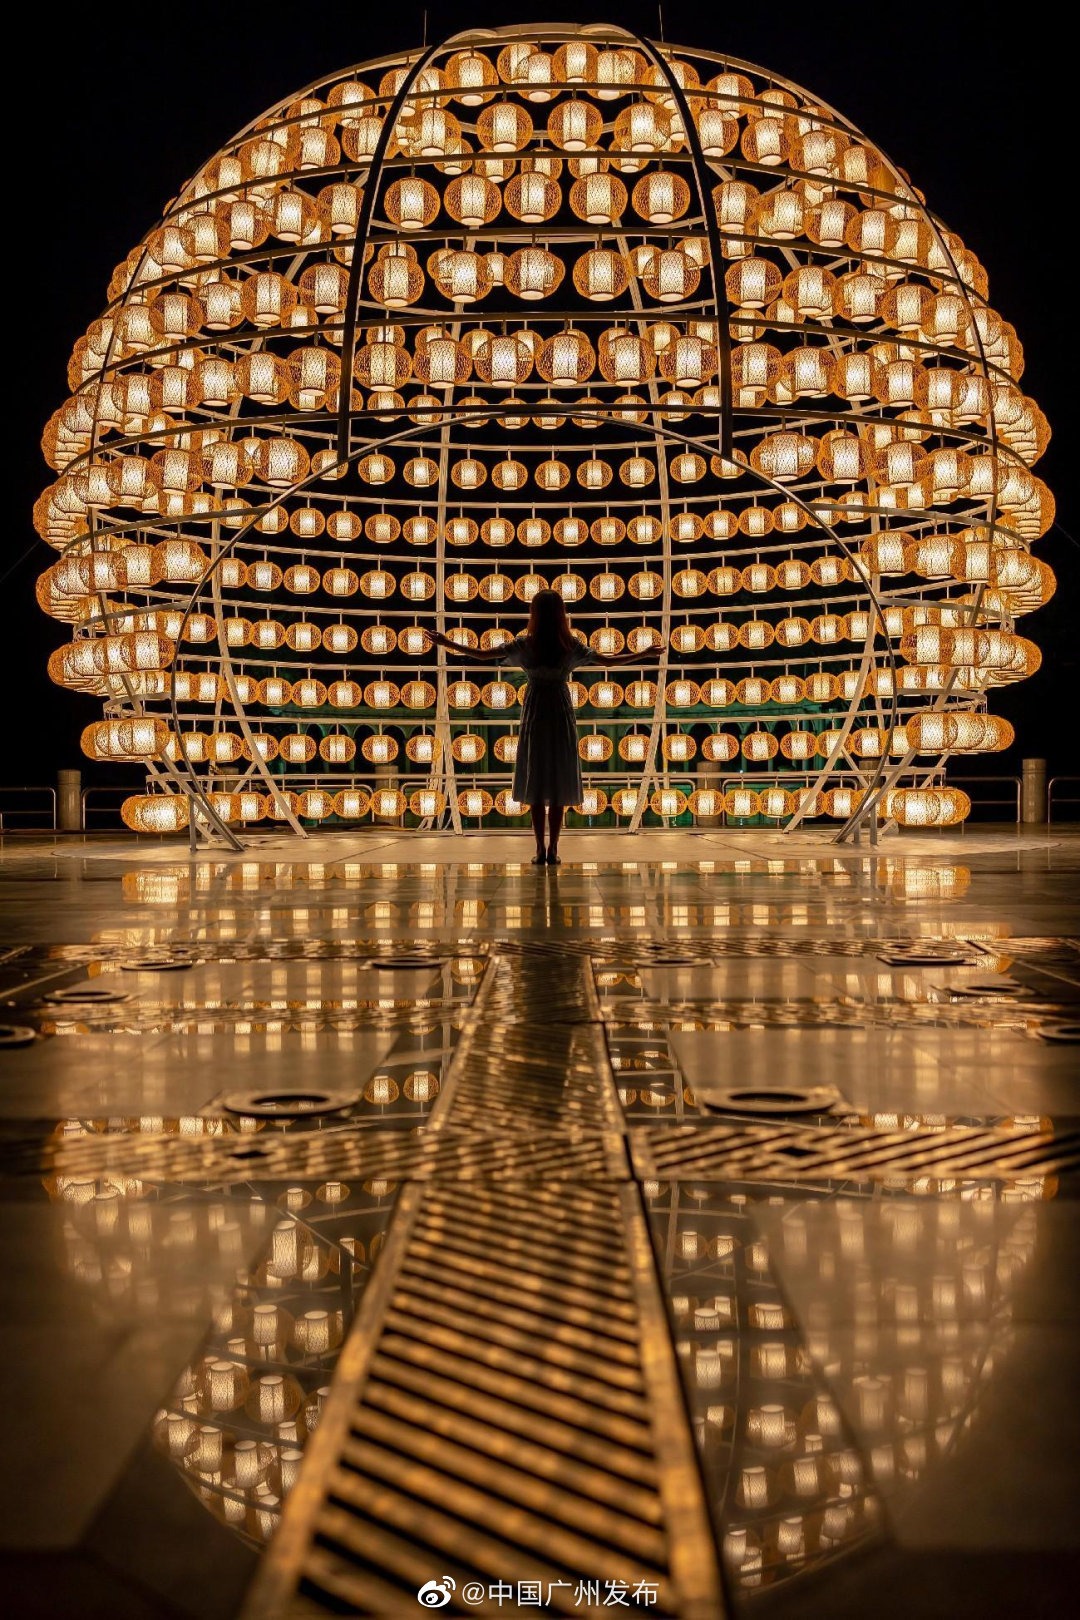 廣州雲台花園沙河鳥籠燈籠